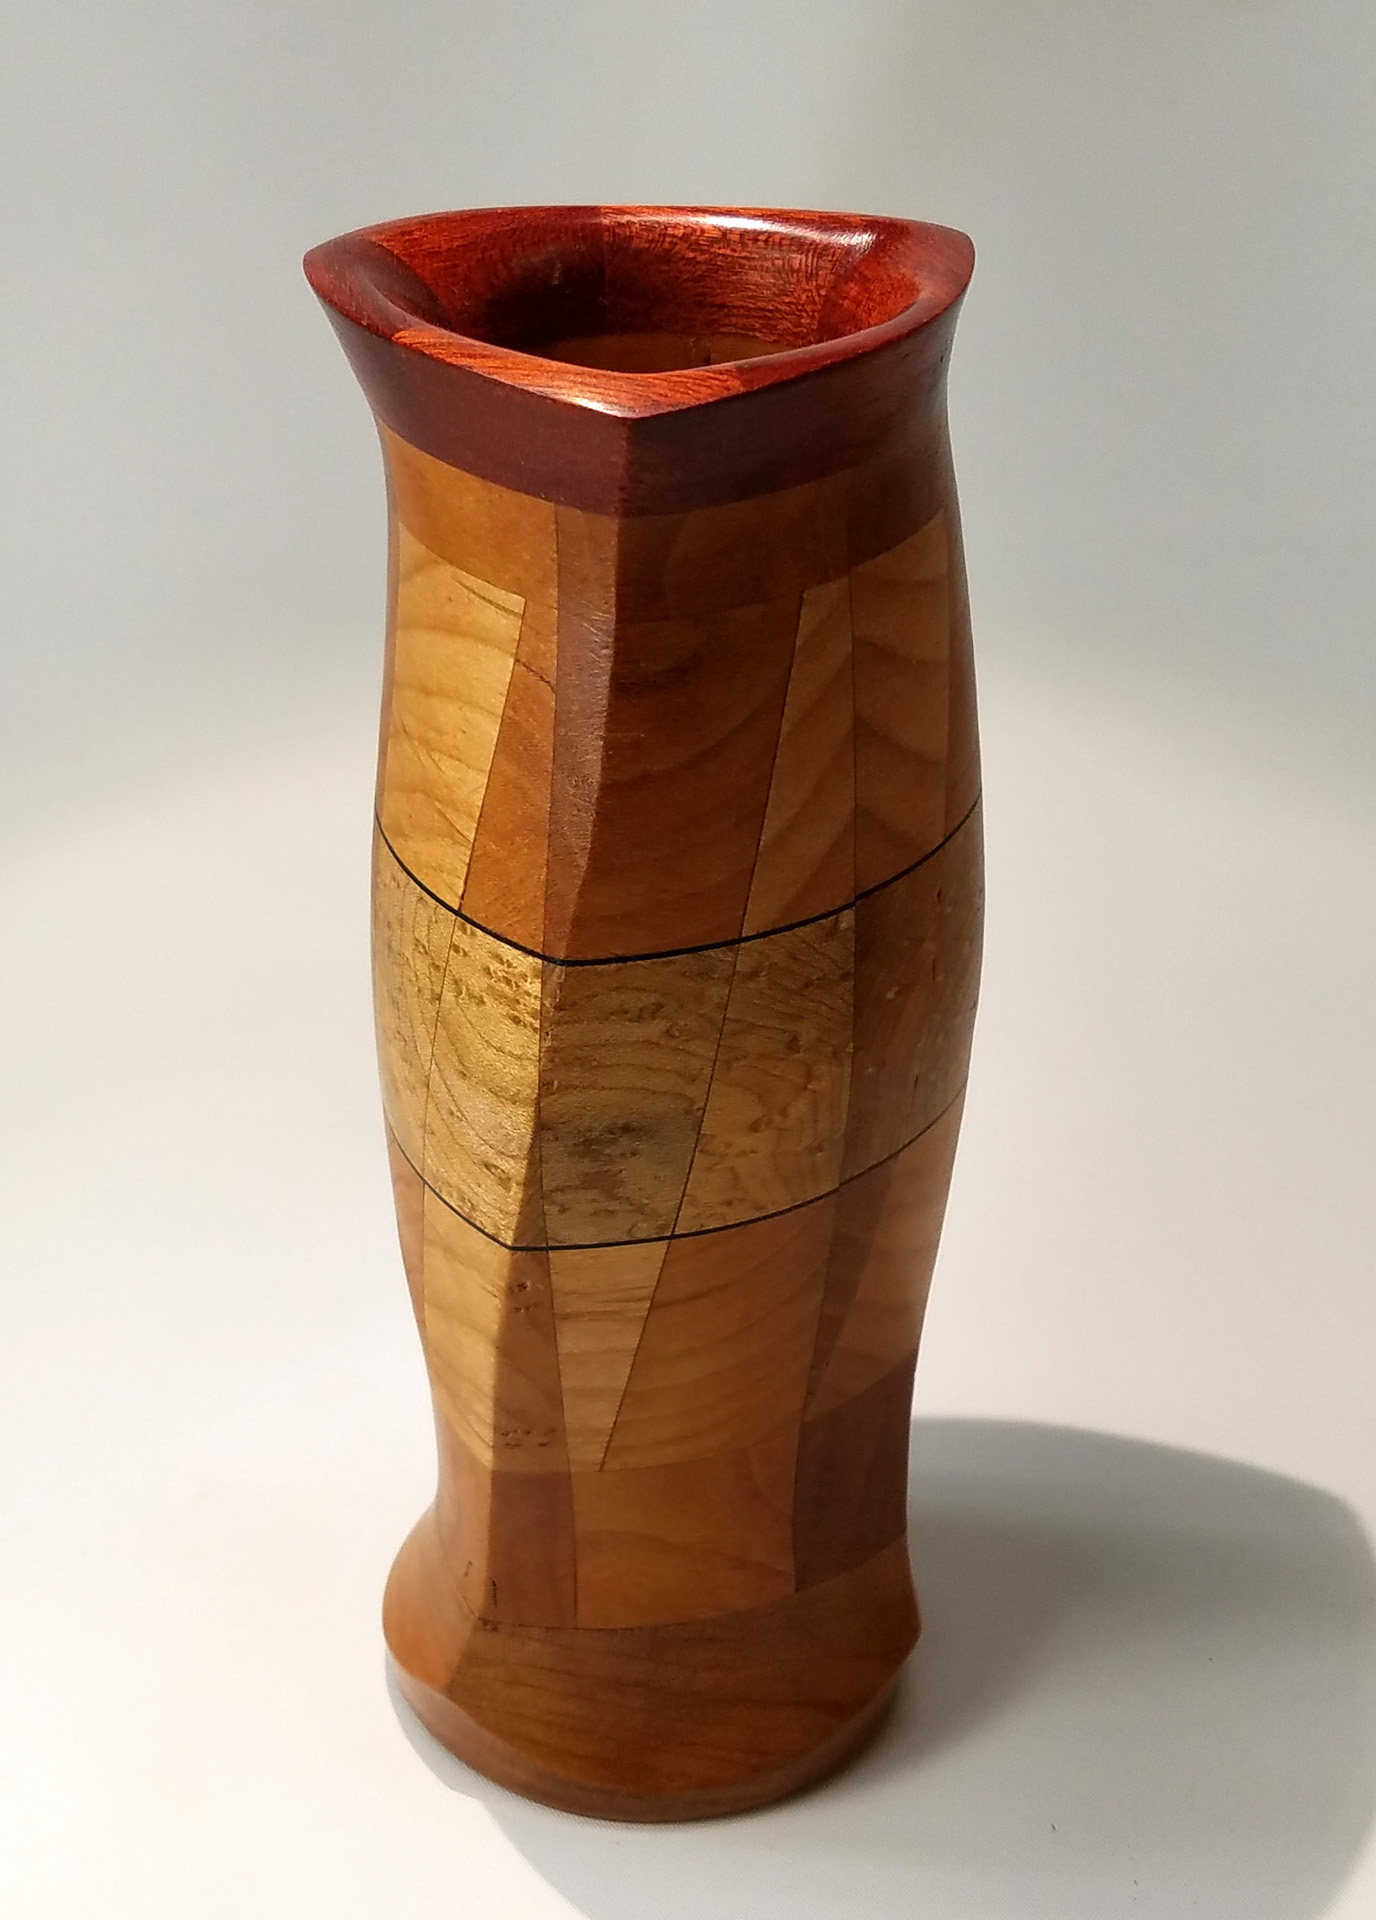 Twisted Segmented Vase